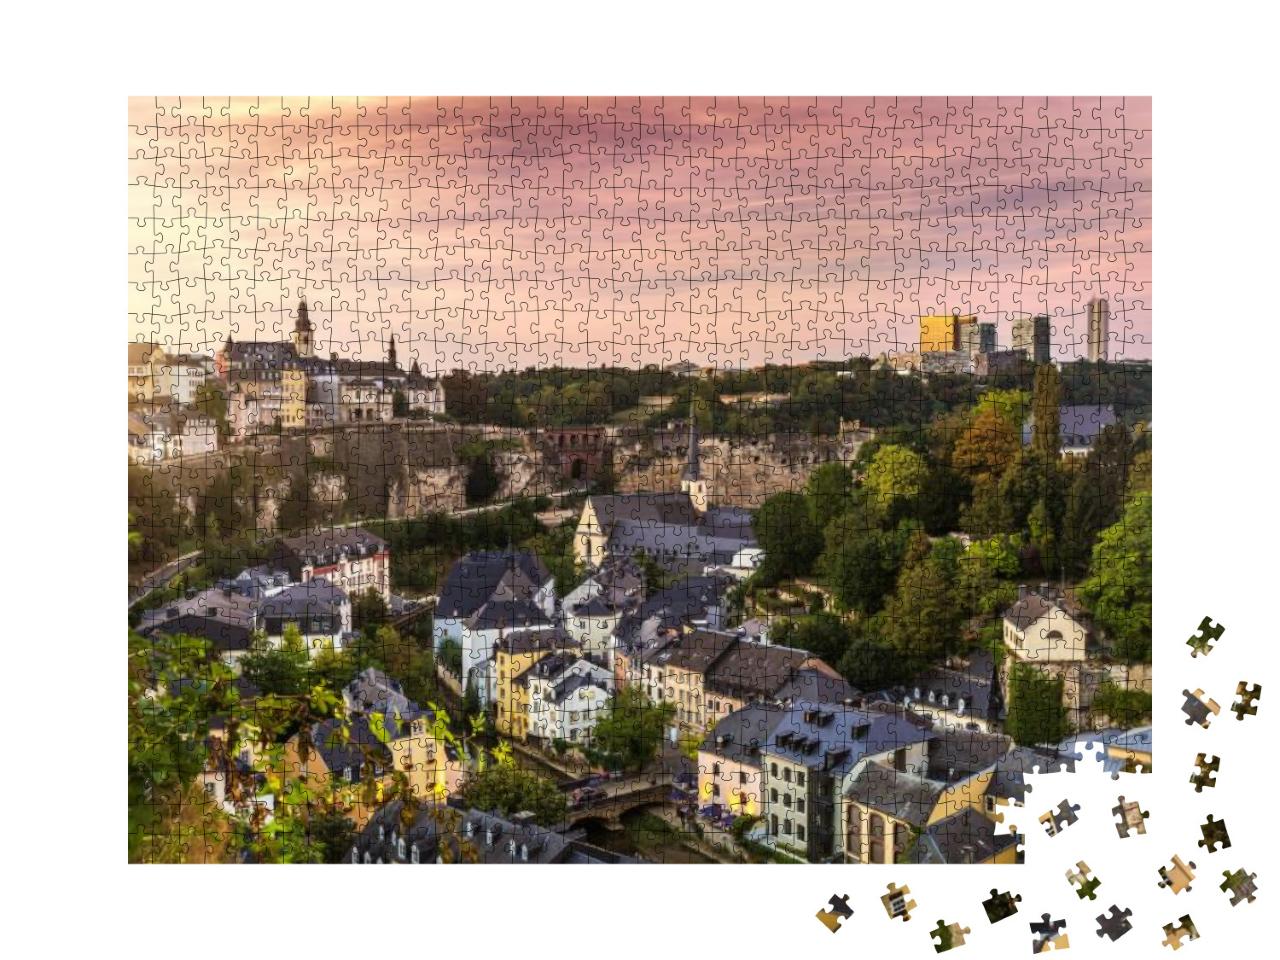 Puzzle 1000 Teile „Die schöne Stadt Luxemburg in Europa“